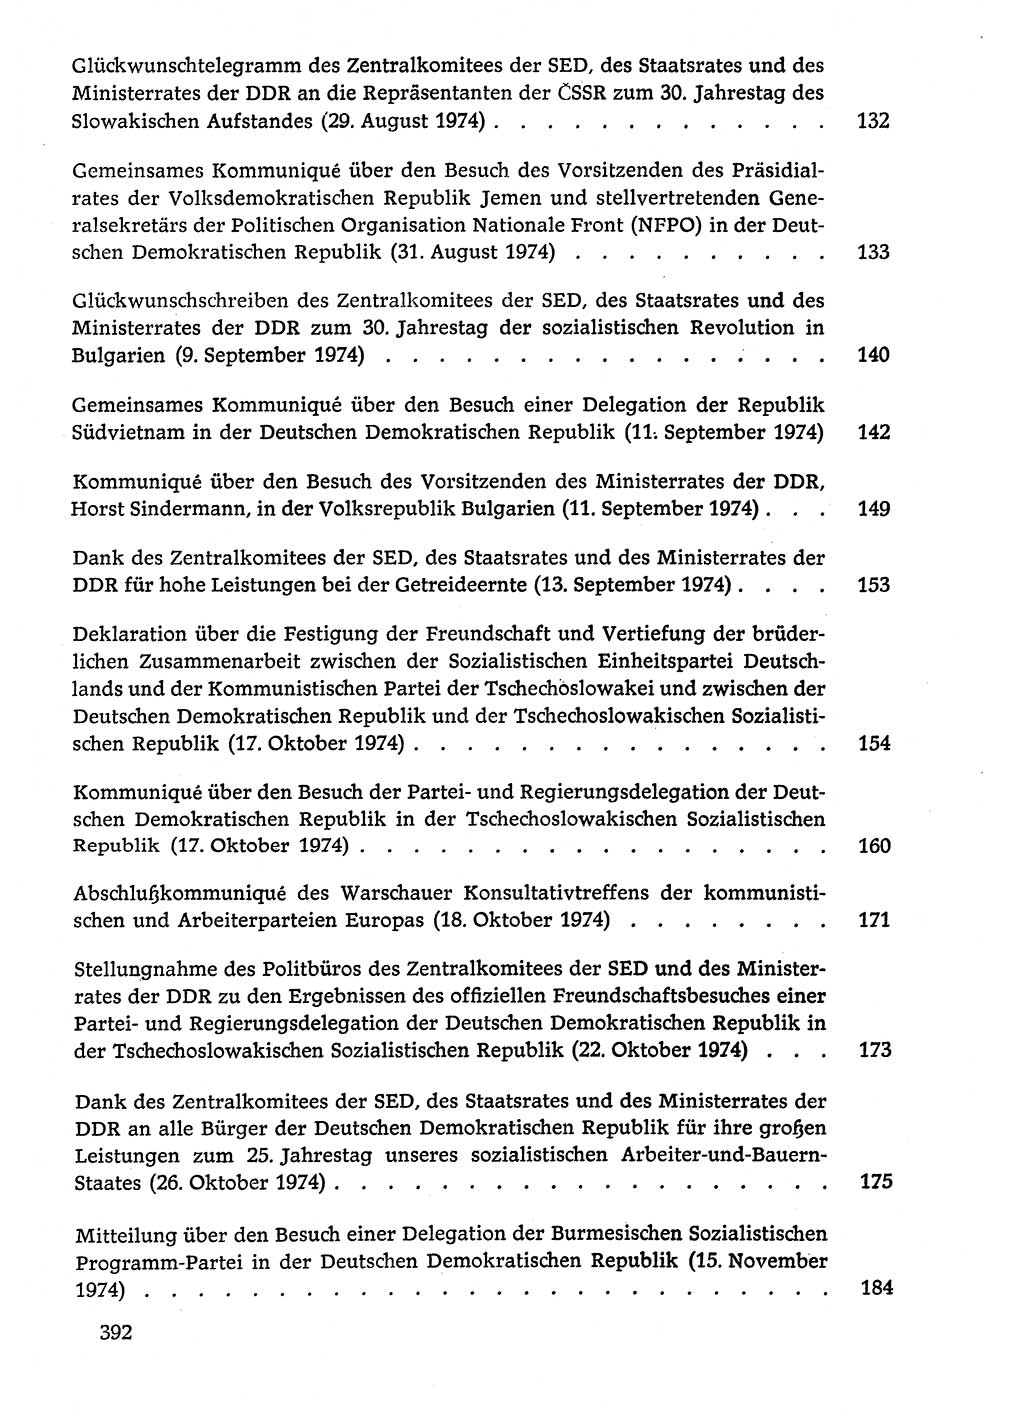 Dokumente der Sozialistischen Einheitspartei Deutschlands (SED) [Deutsche Demokratische Republik (DDR)] 1974-1975, Seite 392 (Dok. SED DDR 1978, Bd. ⅩⅤ, S. 392)